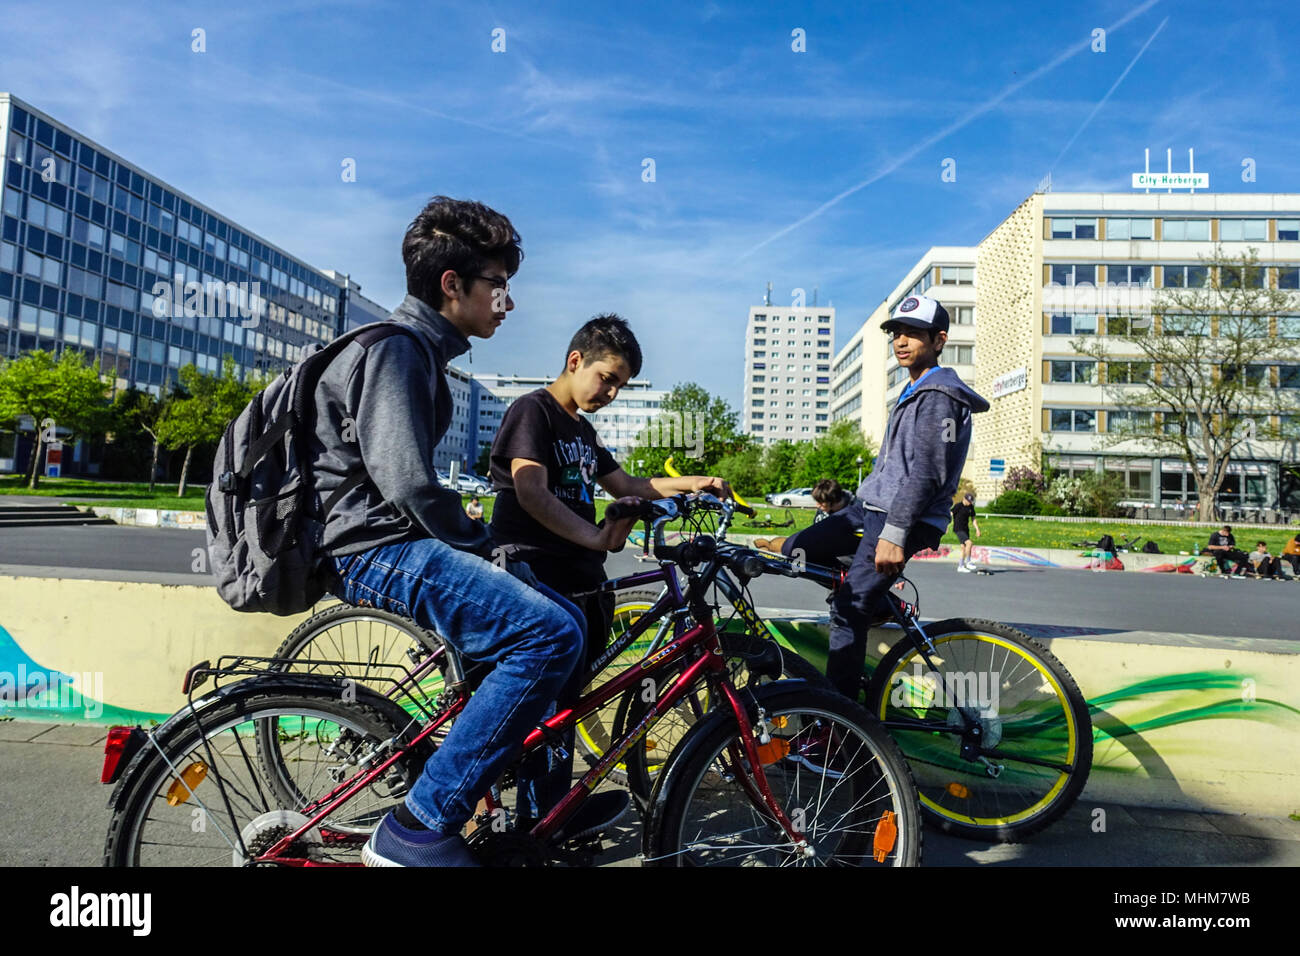 Les adolescents des vélos à un milieu urbain vtt et Skate parc Lingnerallee, Dresde, Saxe, Allemagne Banque D'Images